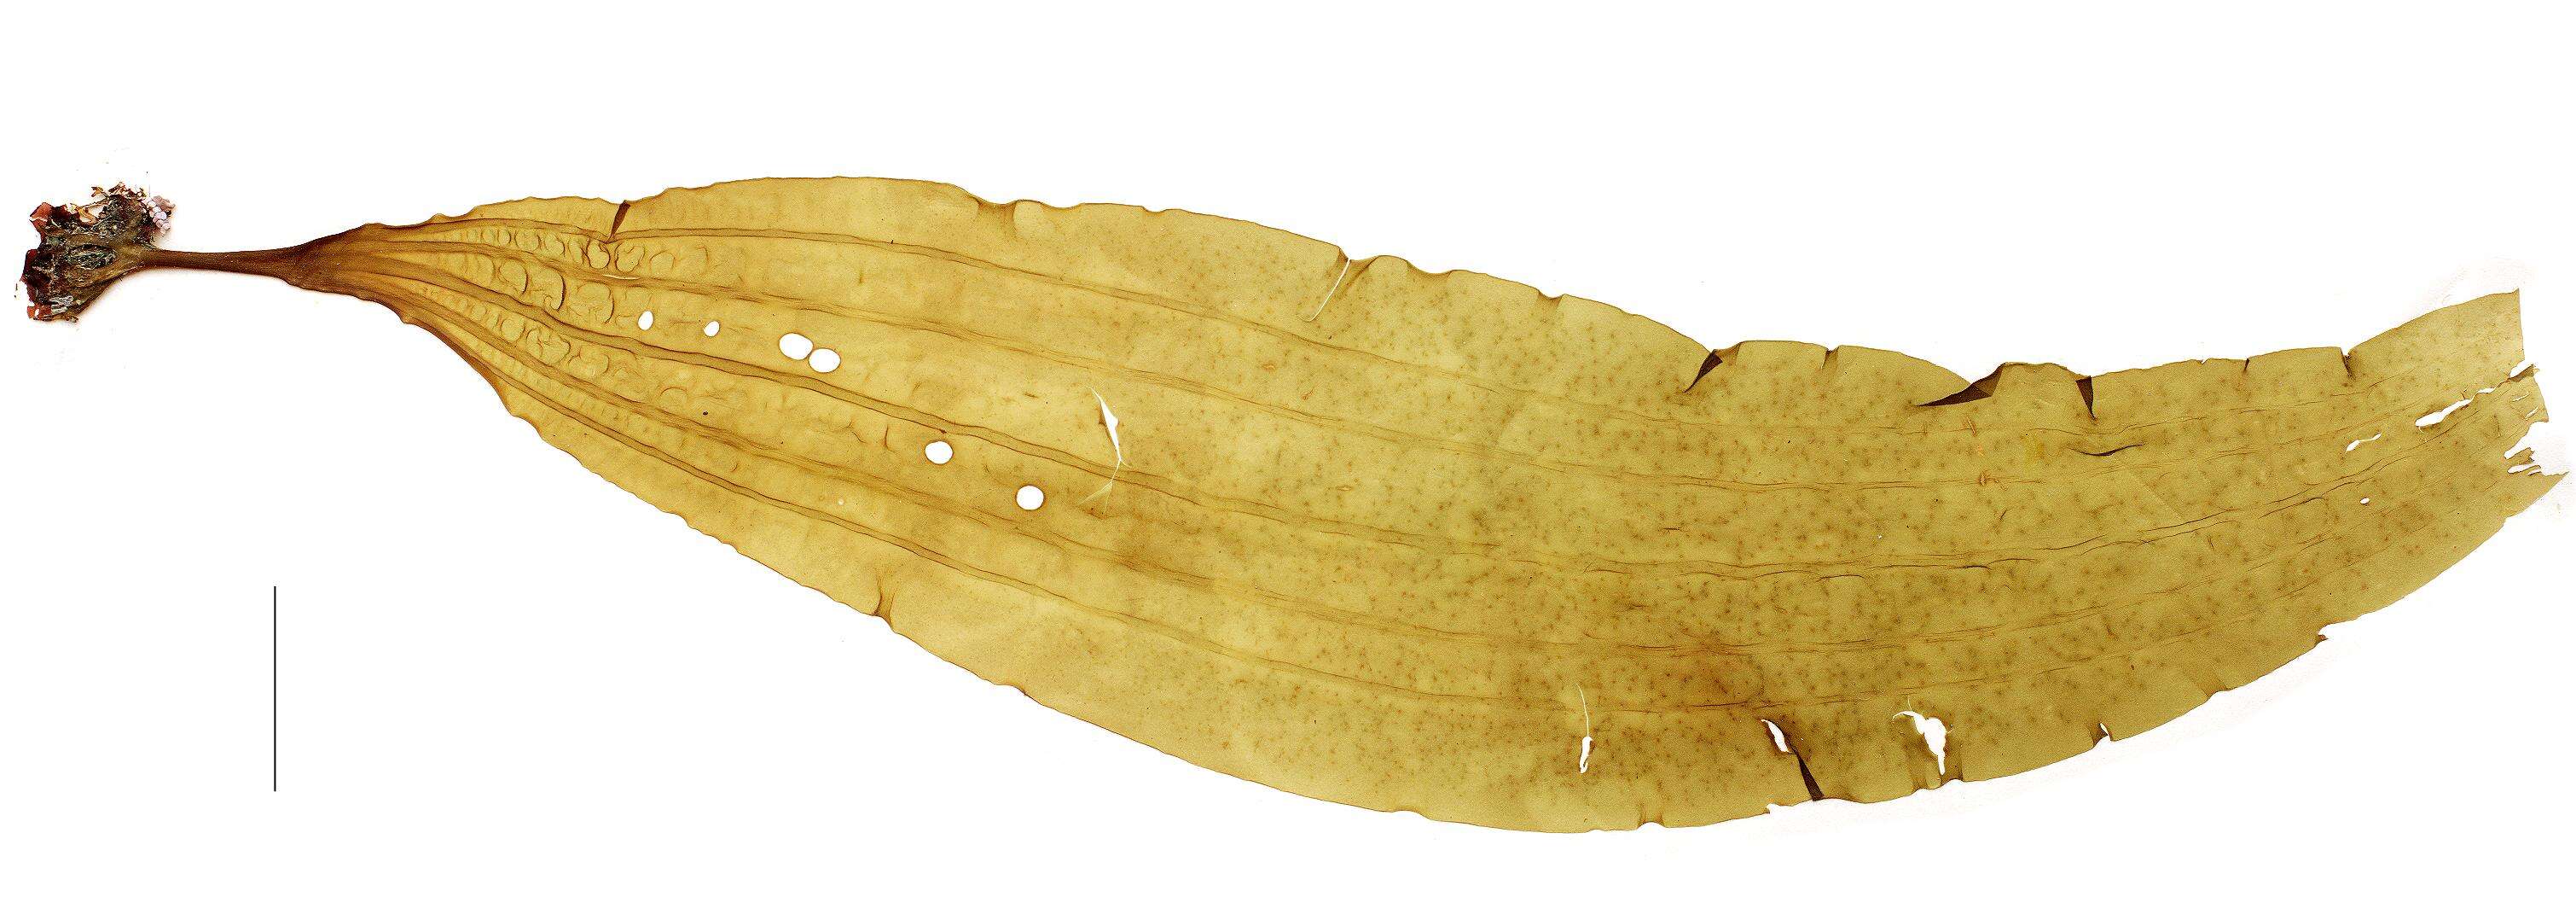 Image of Agaraceae